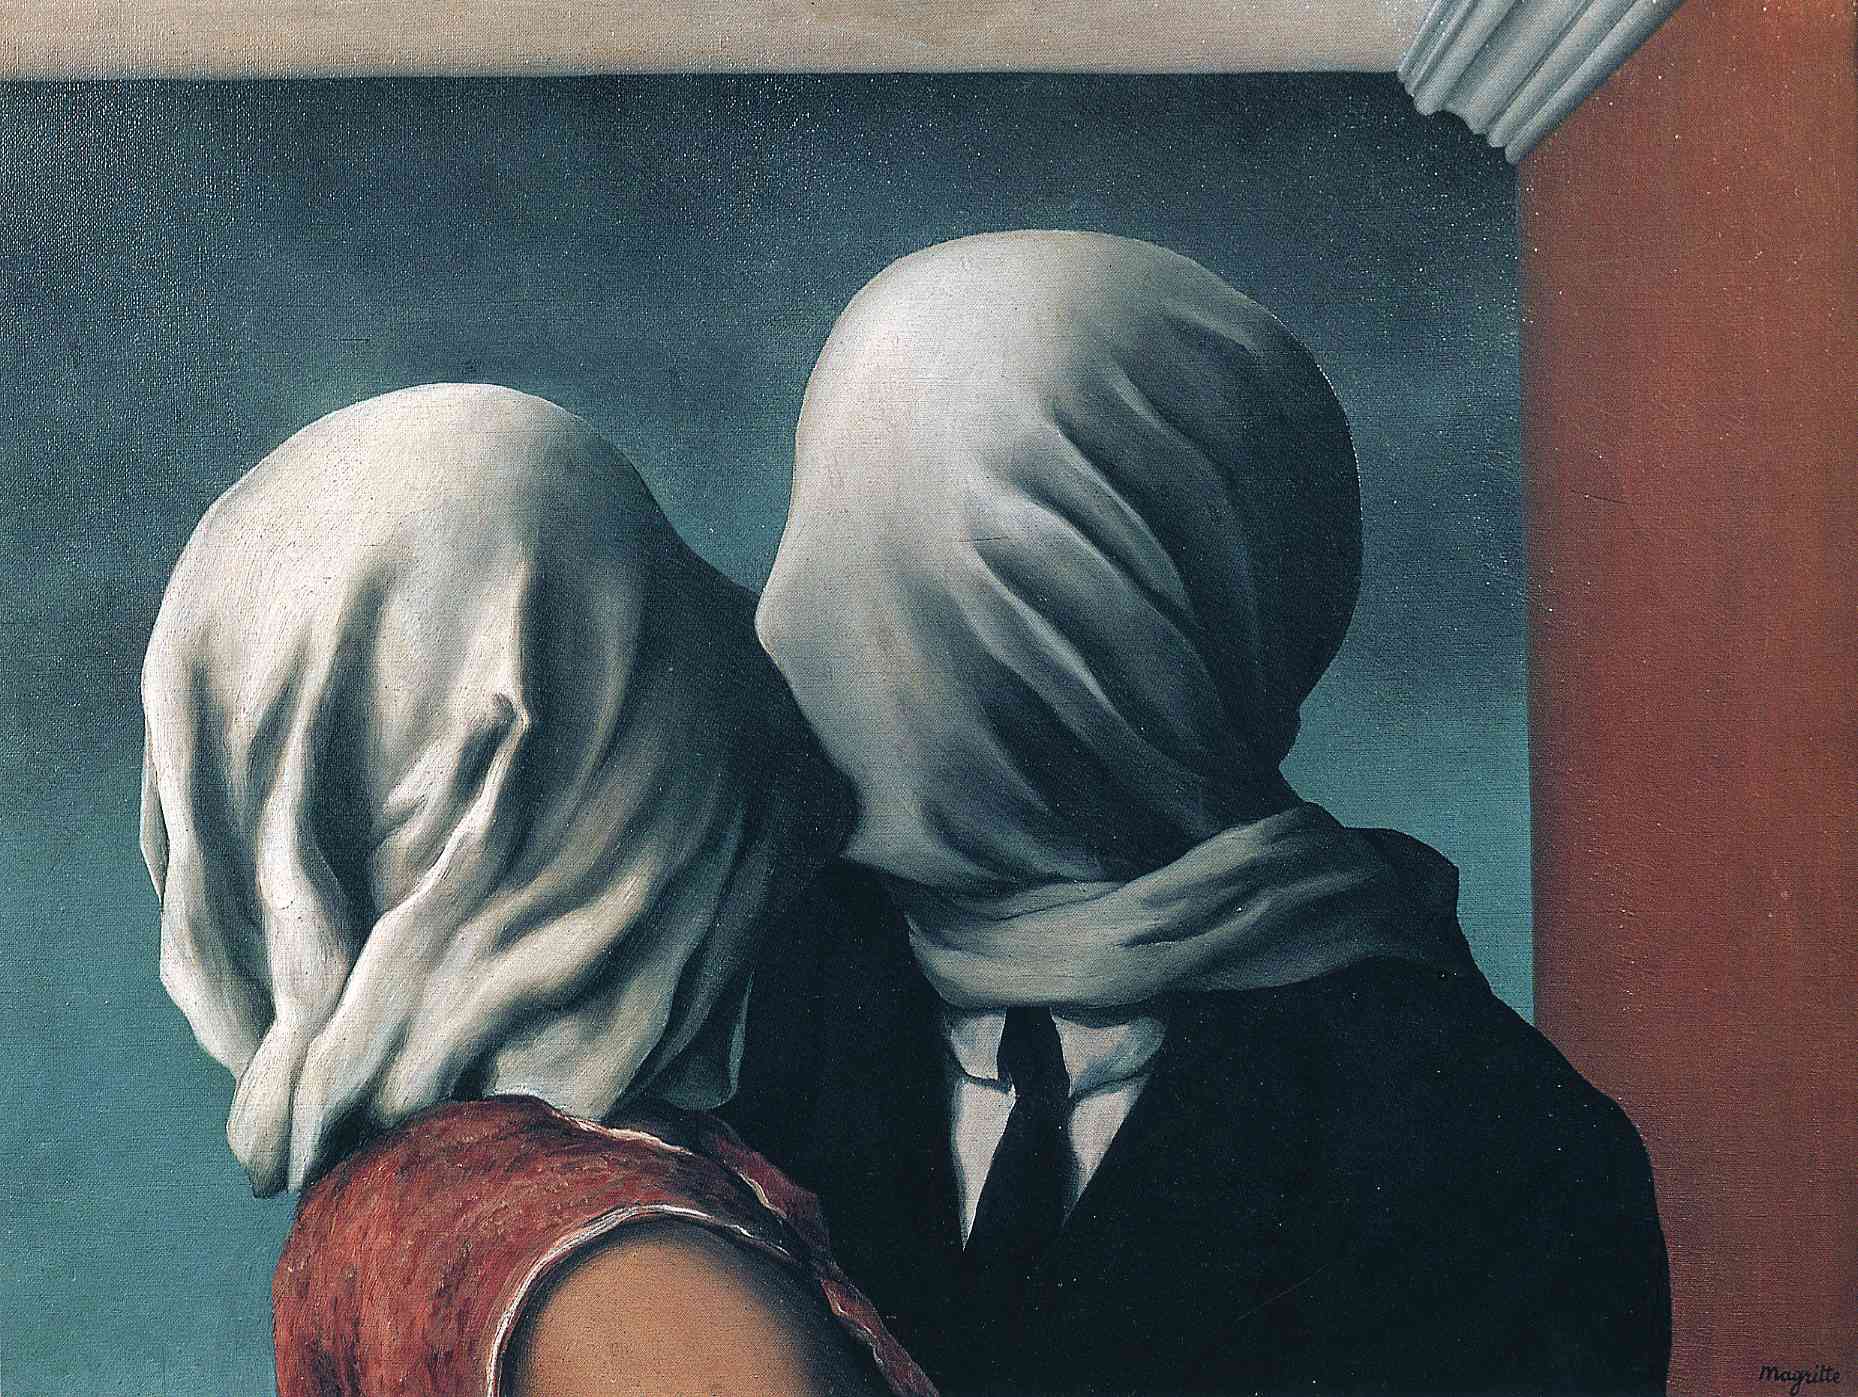 愛人 by René Magritte - 1928 - 54 x 73.4 釐米 